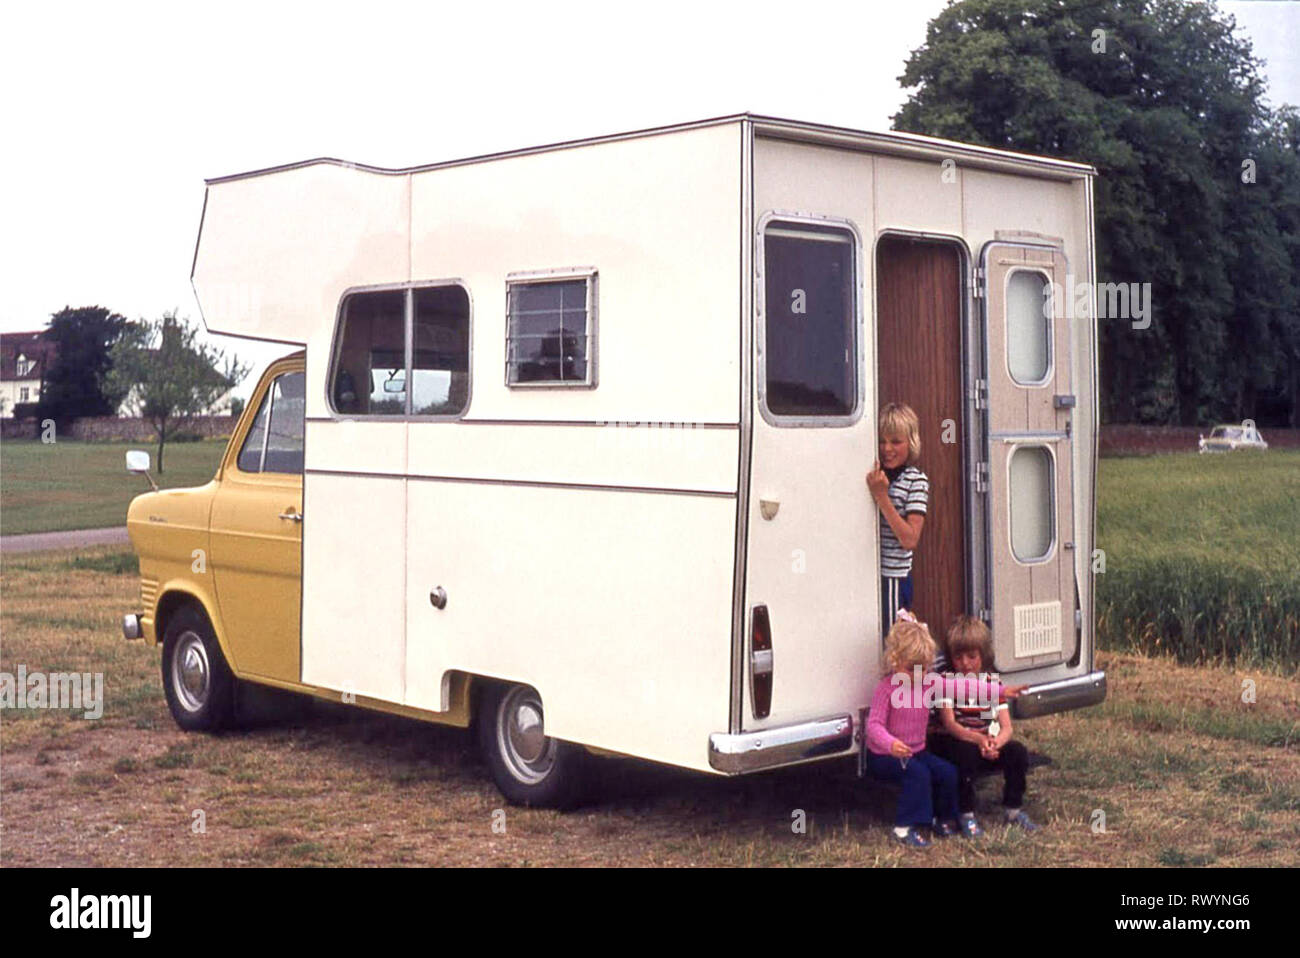 Camping camping-car spécialement conçu Van motorhome construit dans les années 1970 sur fond jaune Ford Transit châssis 3 jeune chidden 70s voyage de vacances en famille Autour de East Anglia Angleterre Royaume-Uni deux garçons et une fille Banque D'Images